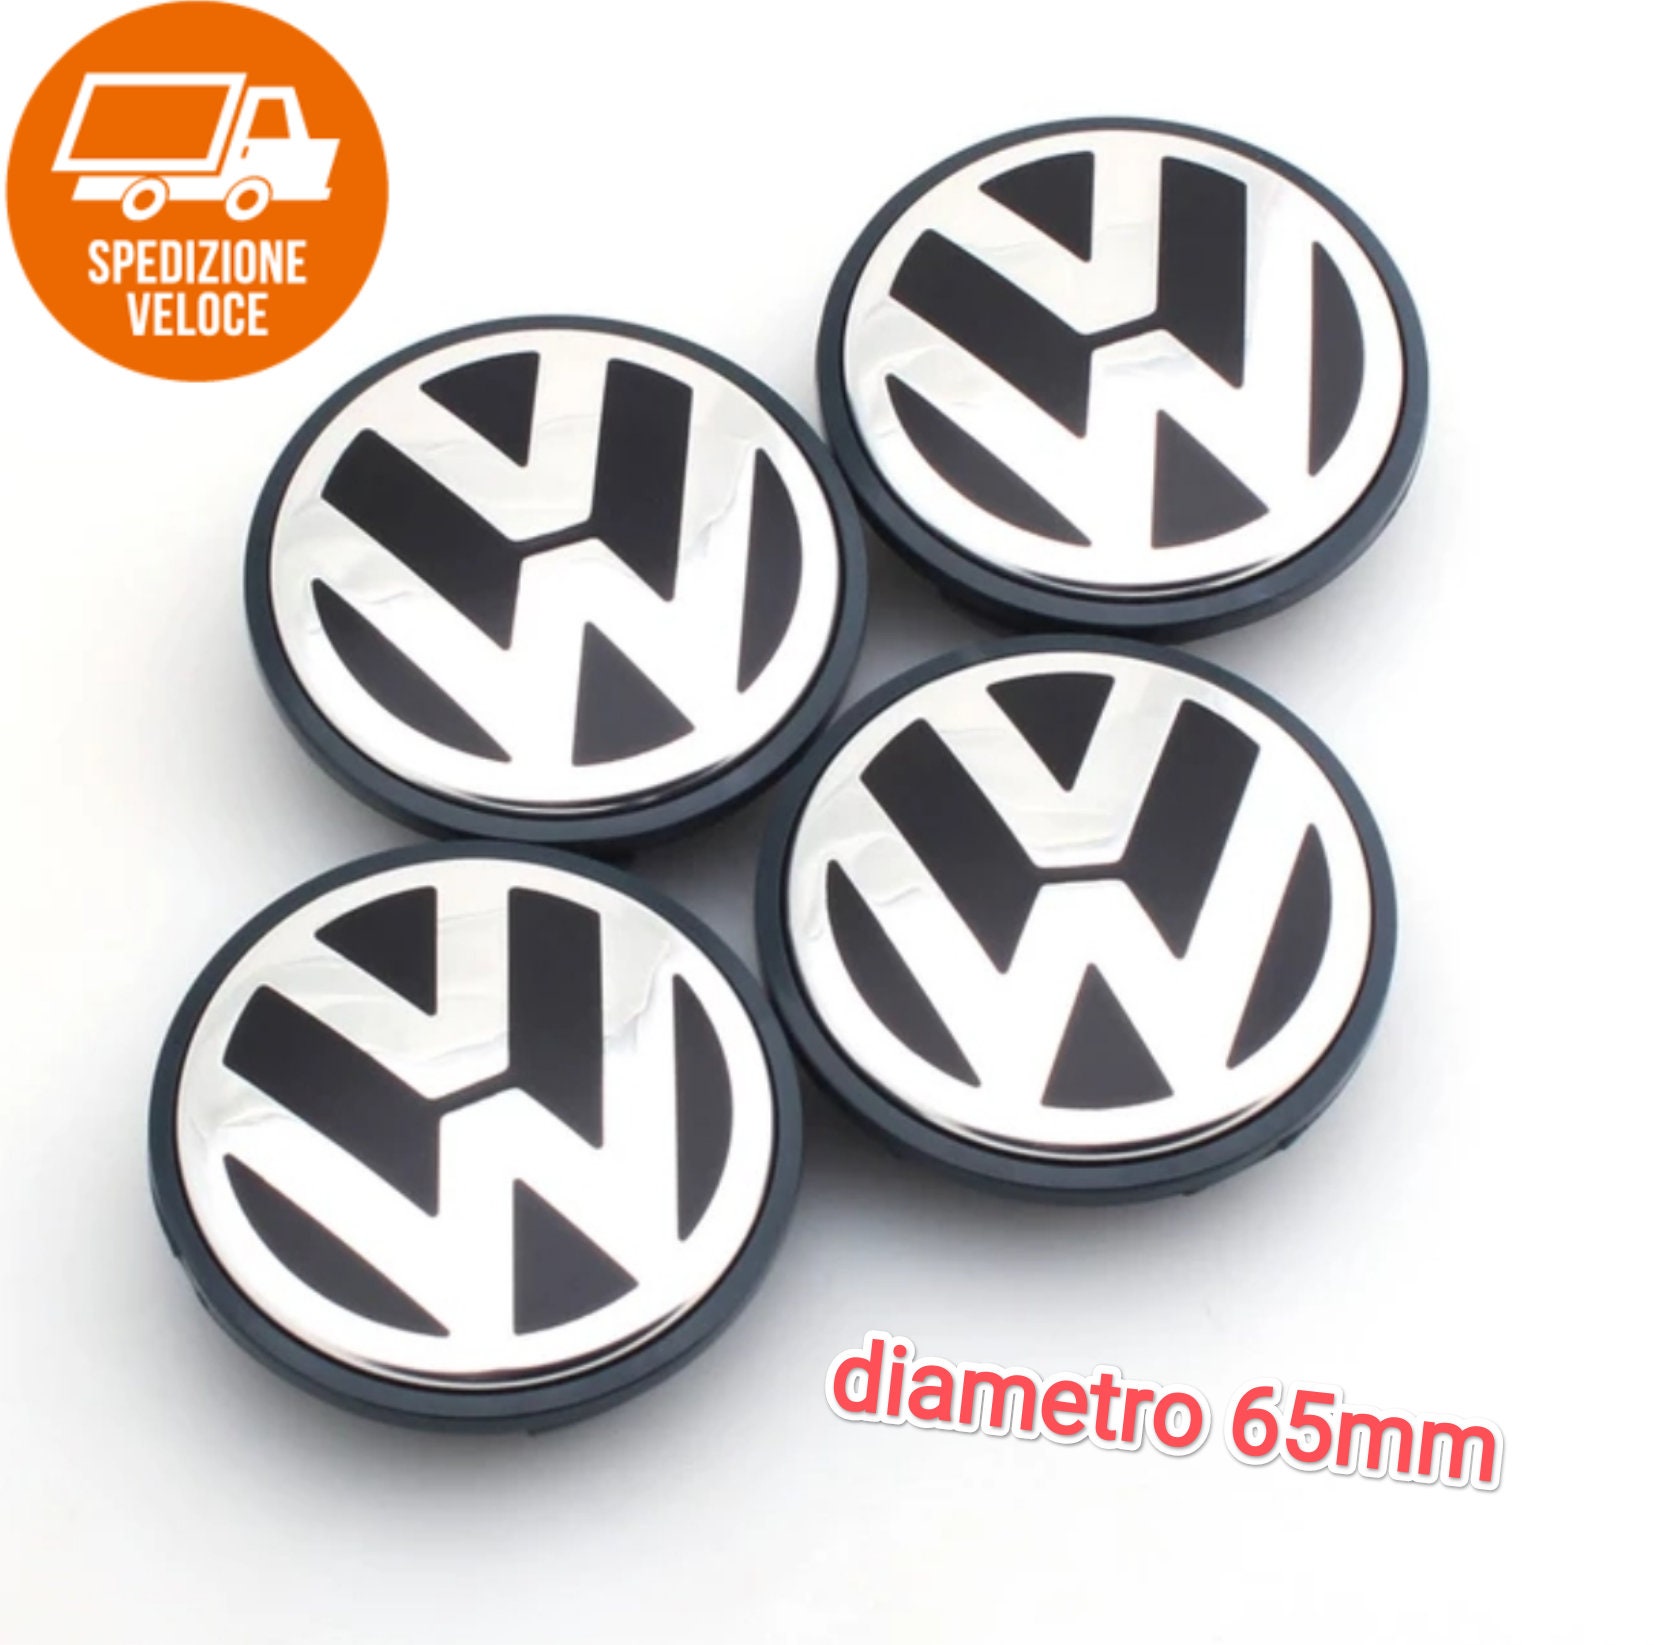 Vw wheel stickers - .de